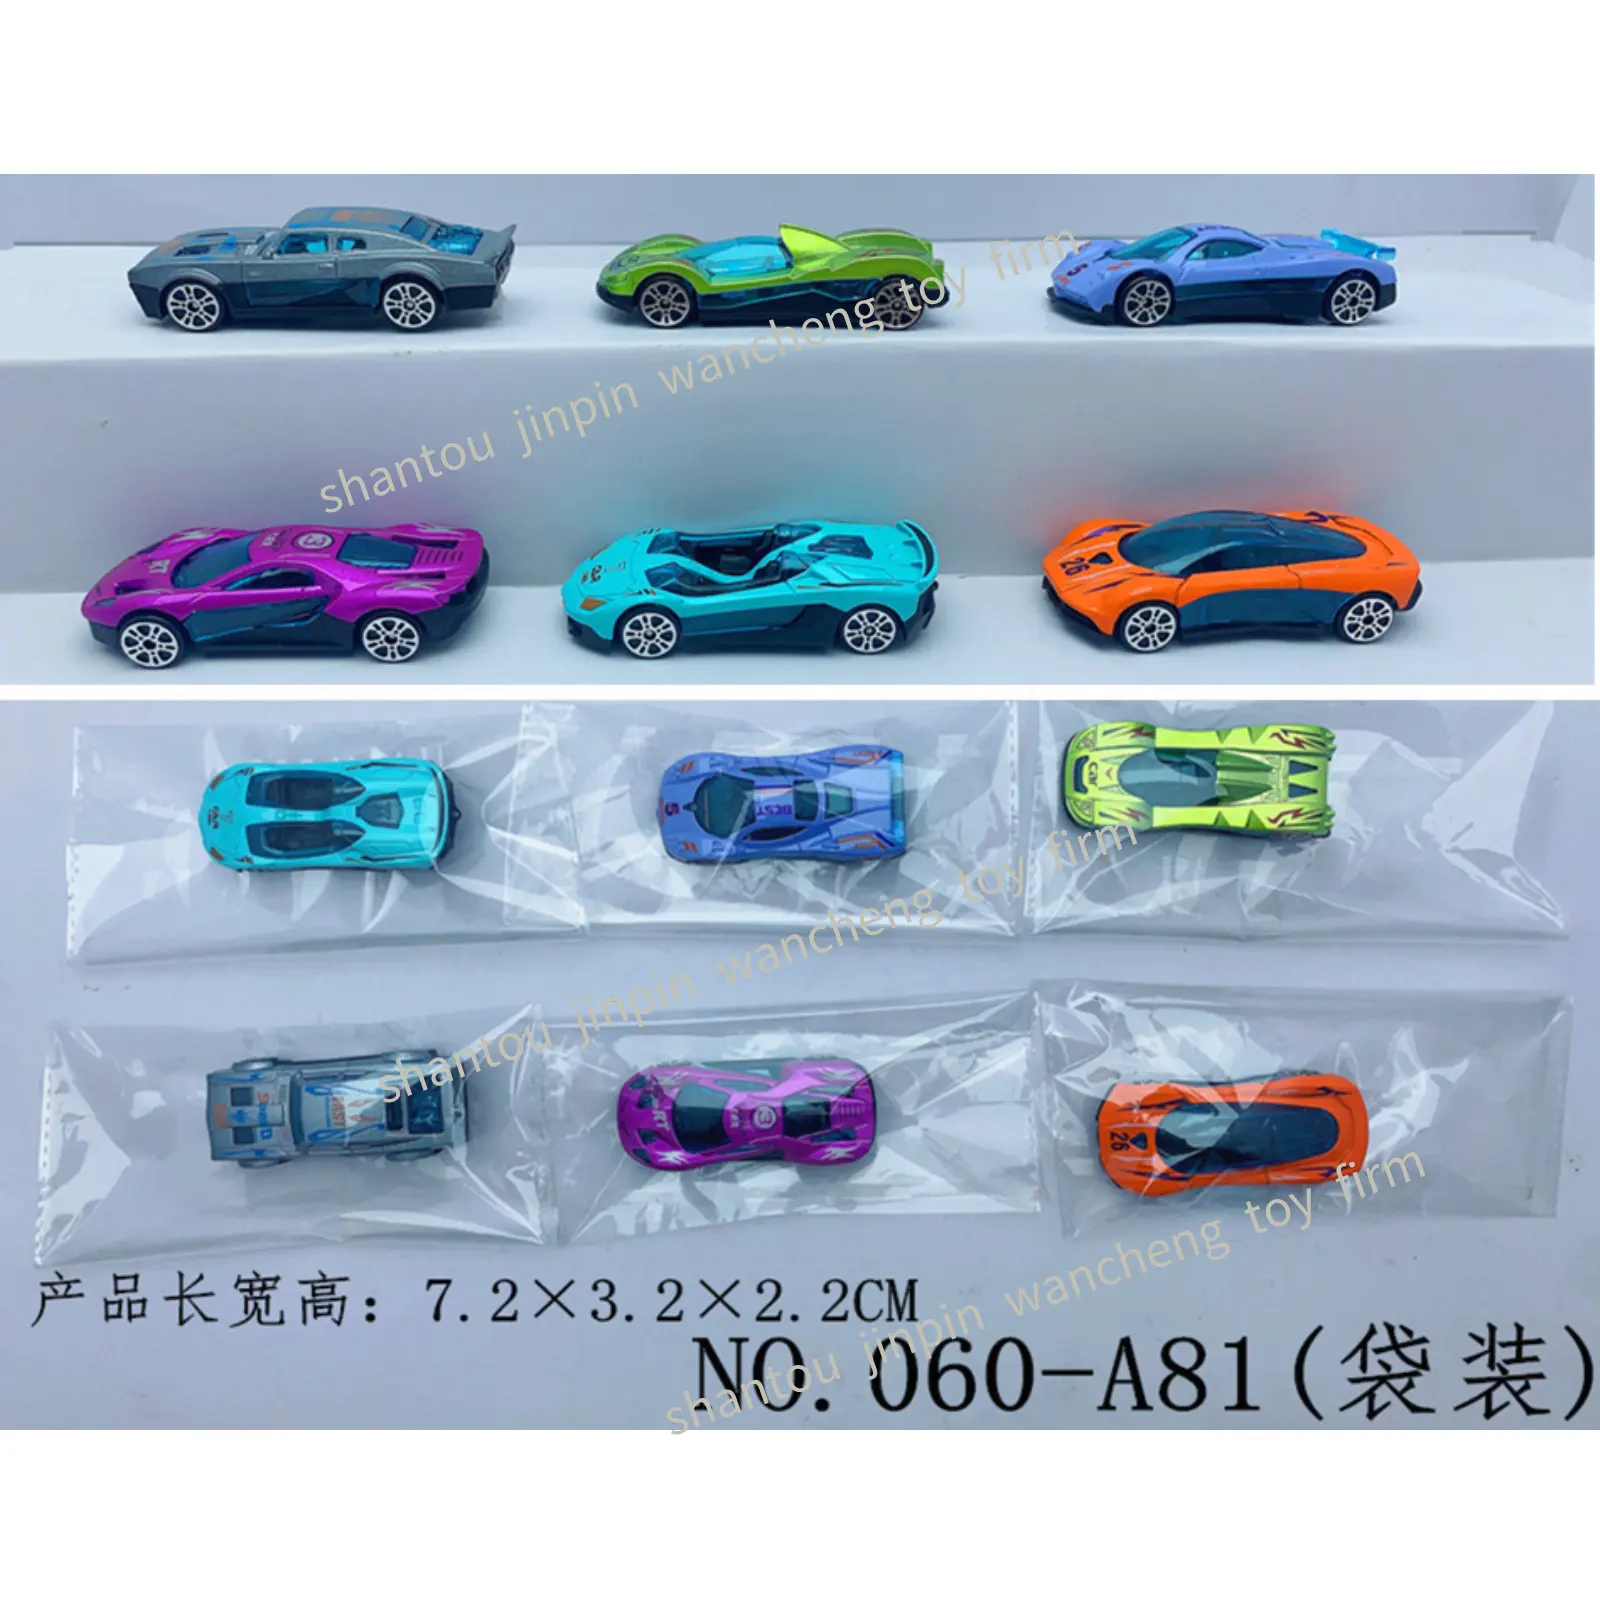 1/64 di simulazione della lega di Dicast vetrina per auto Mini metallo pressofuso piccolo modello per bambini veicoli per auto giocattolo per bambini